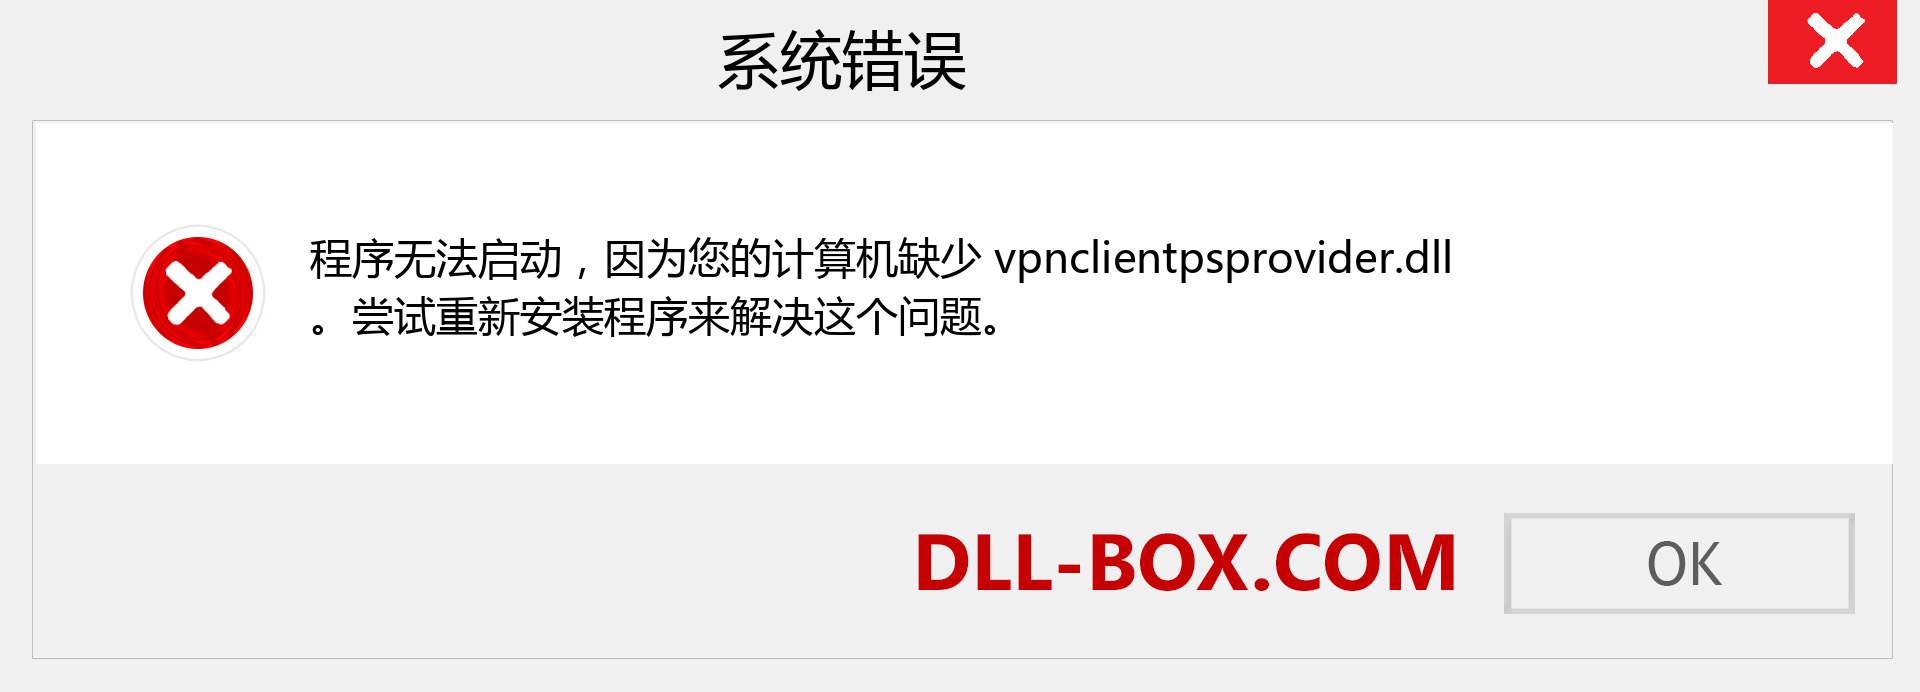 vpnclientpsprovider.dll 文件丢失？。 适用于 Windows 7、8、10 的下载 - 修复 Windows、照片、图像上的 vpnclientpsprovider dll 丢失错误